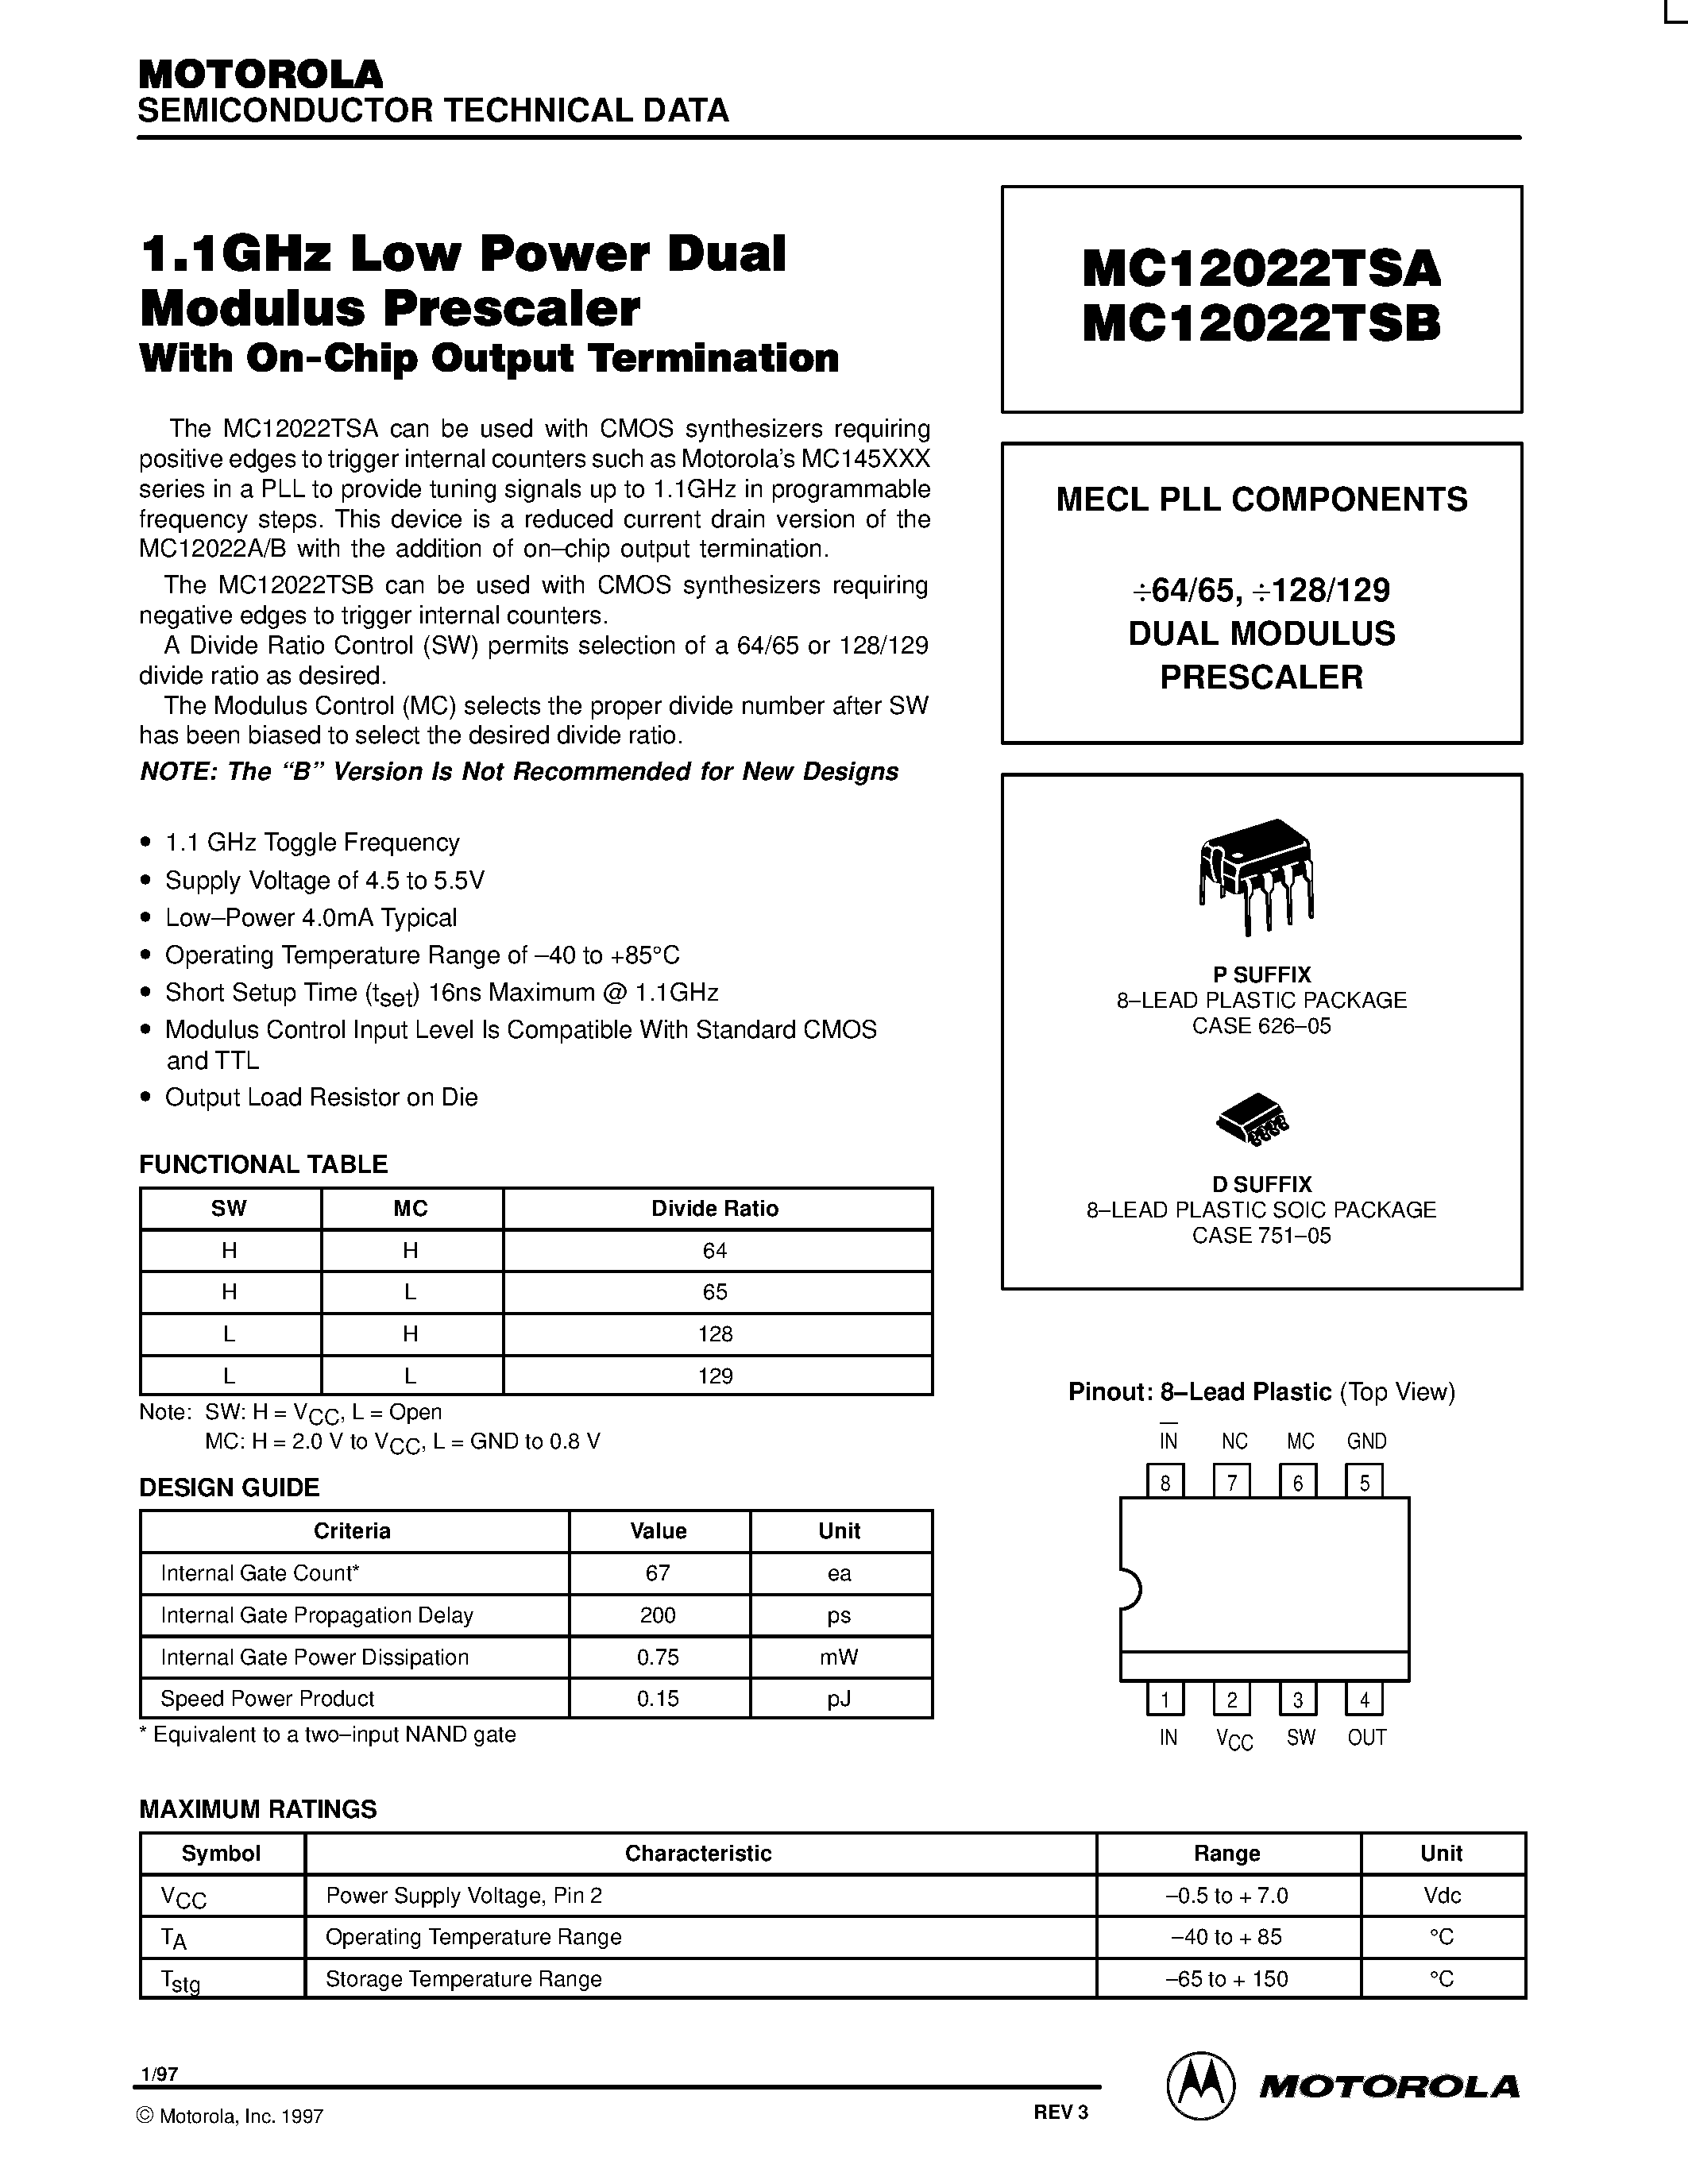 Даташит MC12022TSAP - MECL PLL COMPONENTS 64/65 / 128/129 DUAL MODULUS PRESCALE страница 1